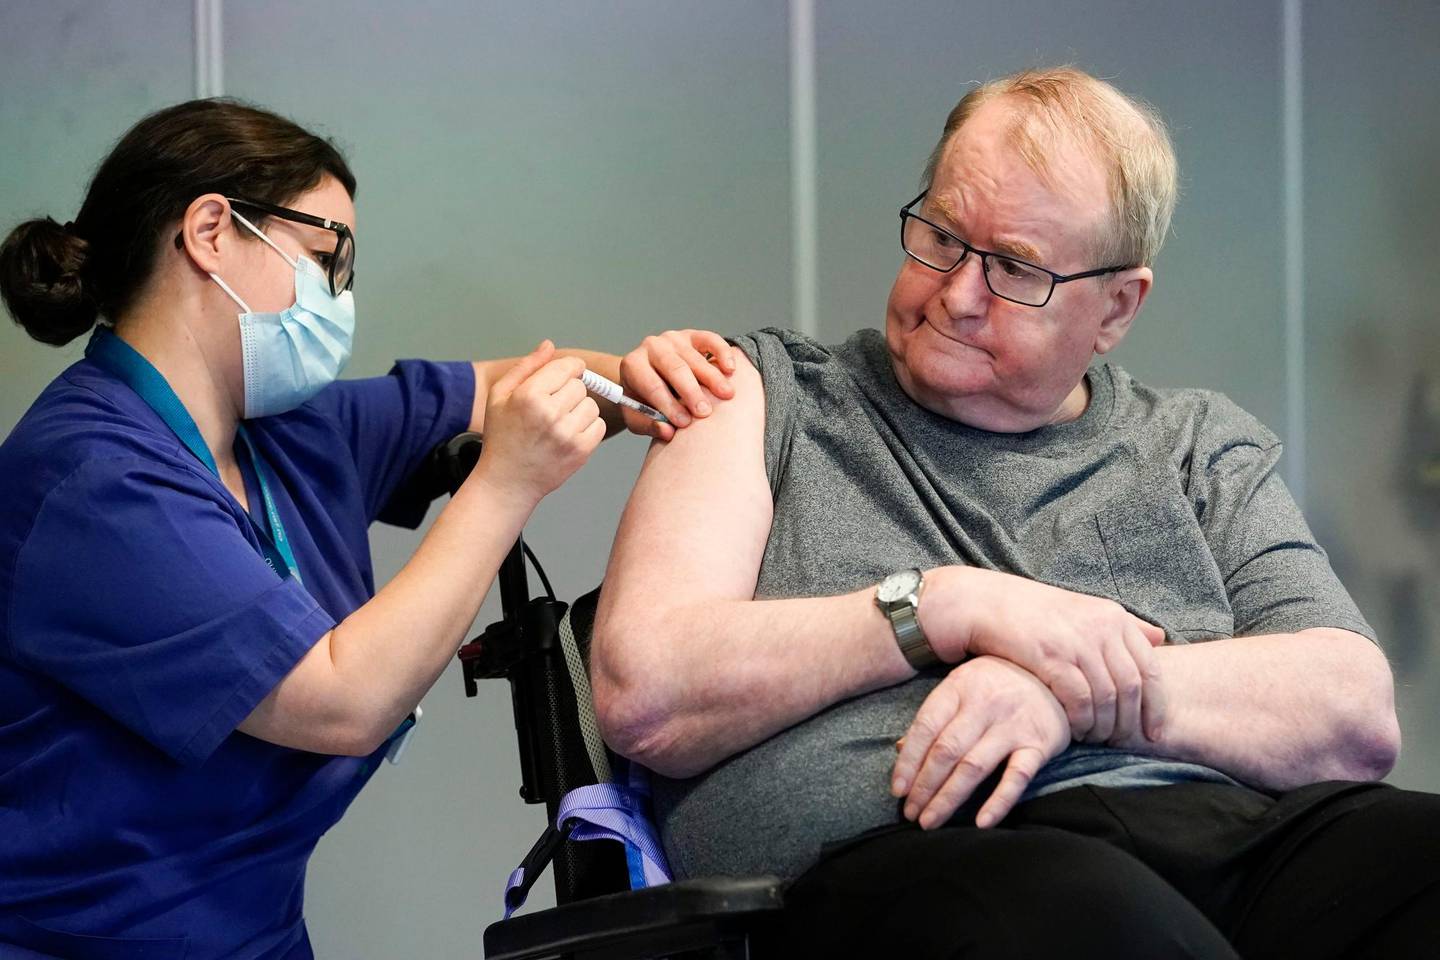 Oslo 20201227. 
Sykepleier Maria Golding vaksinerer Svein Andersen (67) mot koronaviruset (Covid-19). Svein Andersen (67) beboer på Ellingsrudhjemmet var den første i Norge som fikk vaksinen.
Foto: Fredrik Hagen / NTB